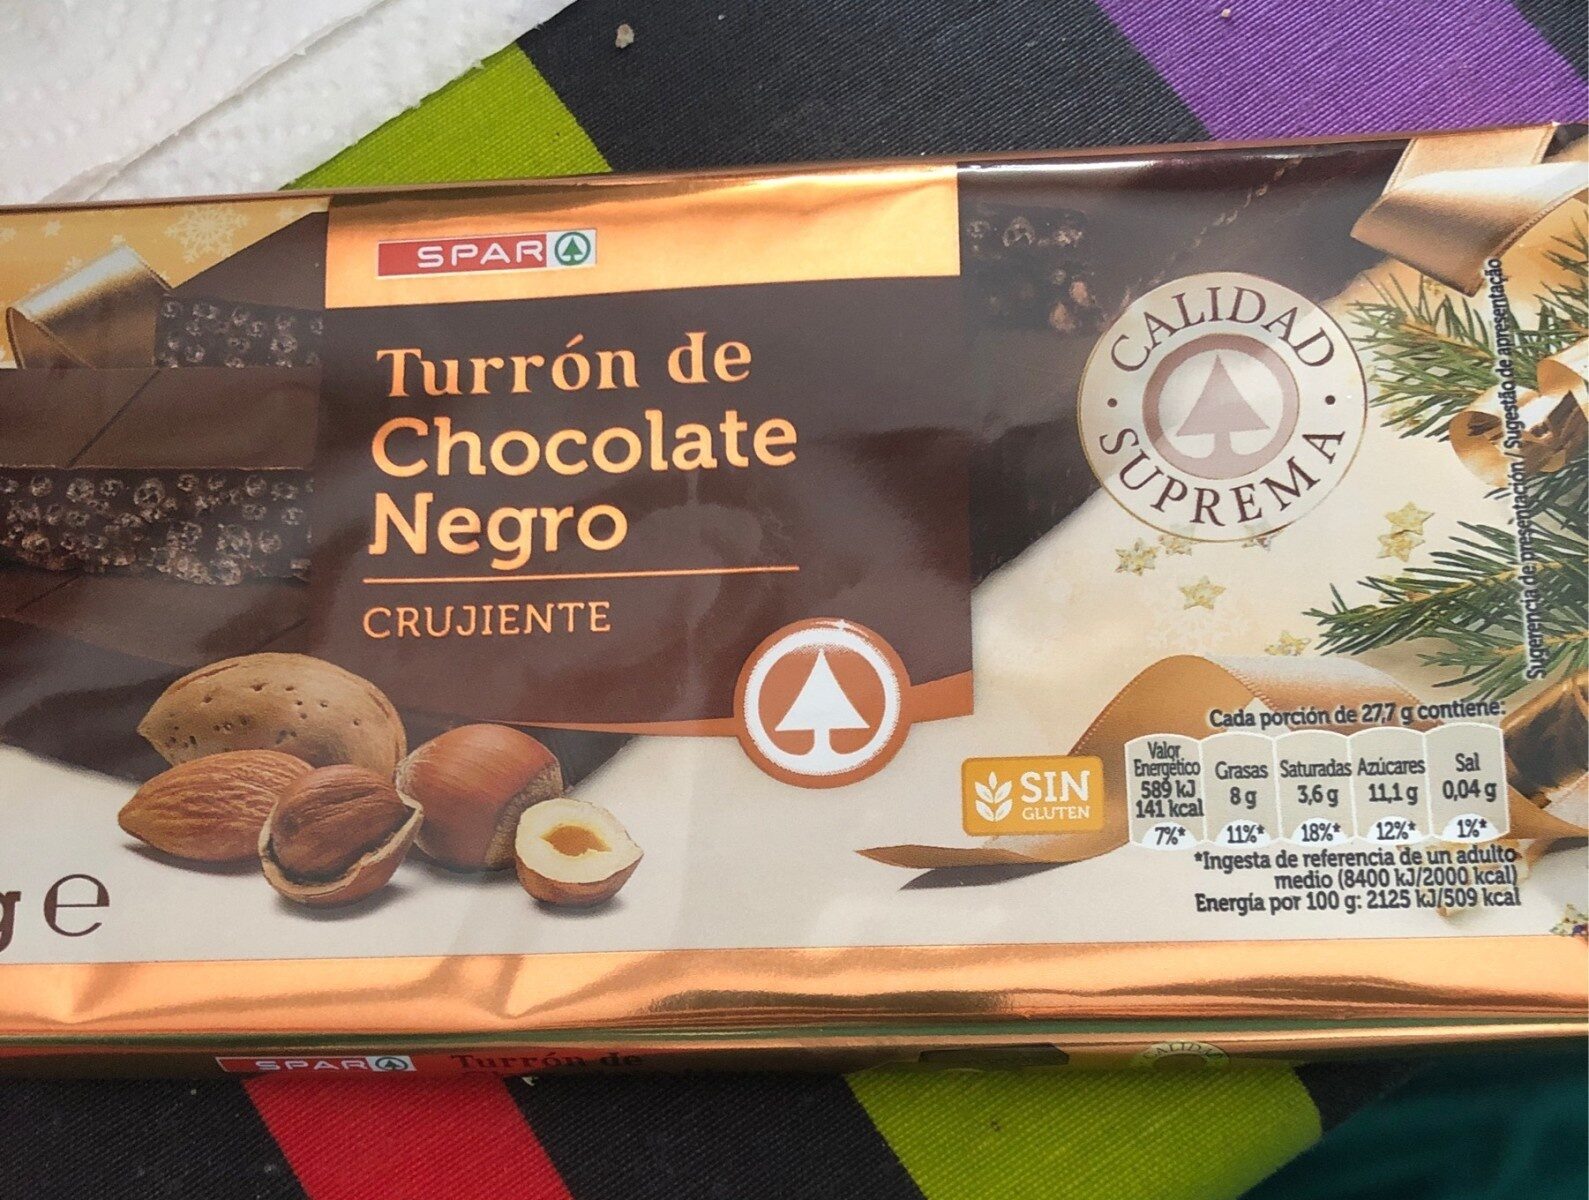 Turrón de chocolate negro crujiente - Product - es